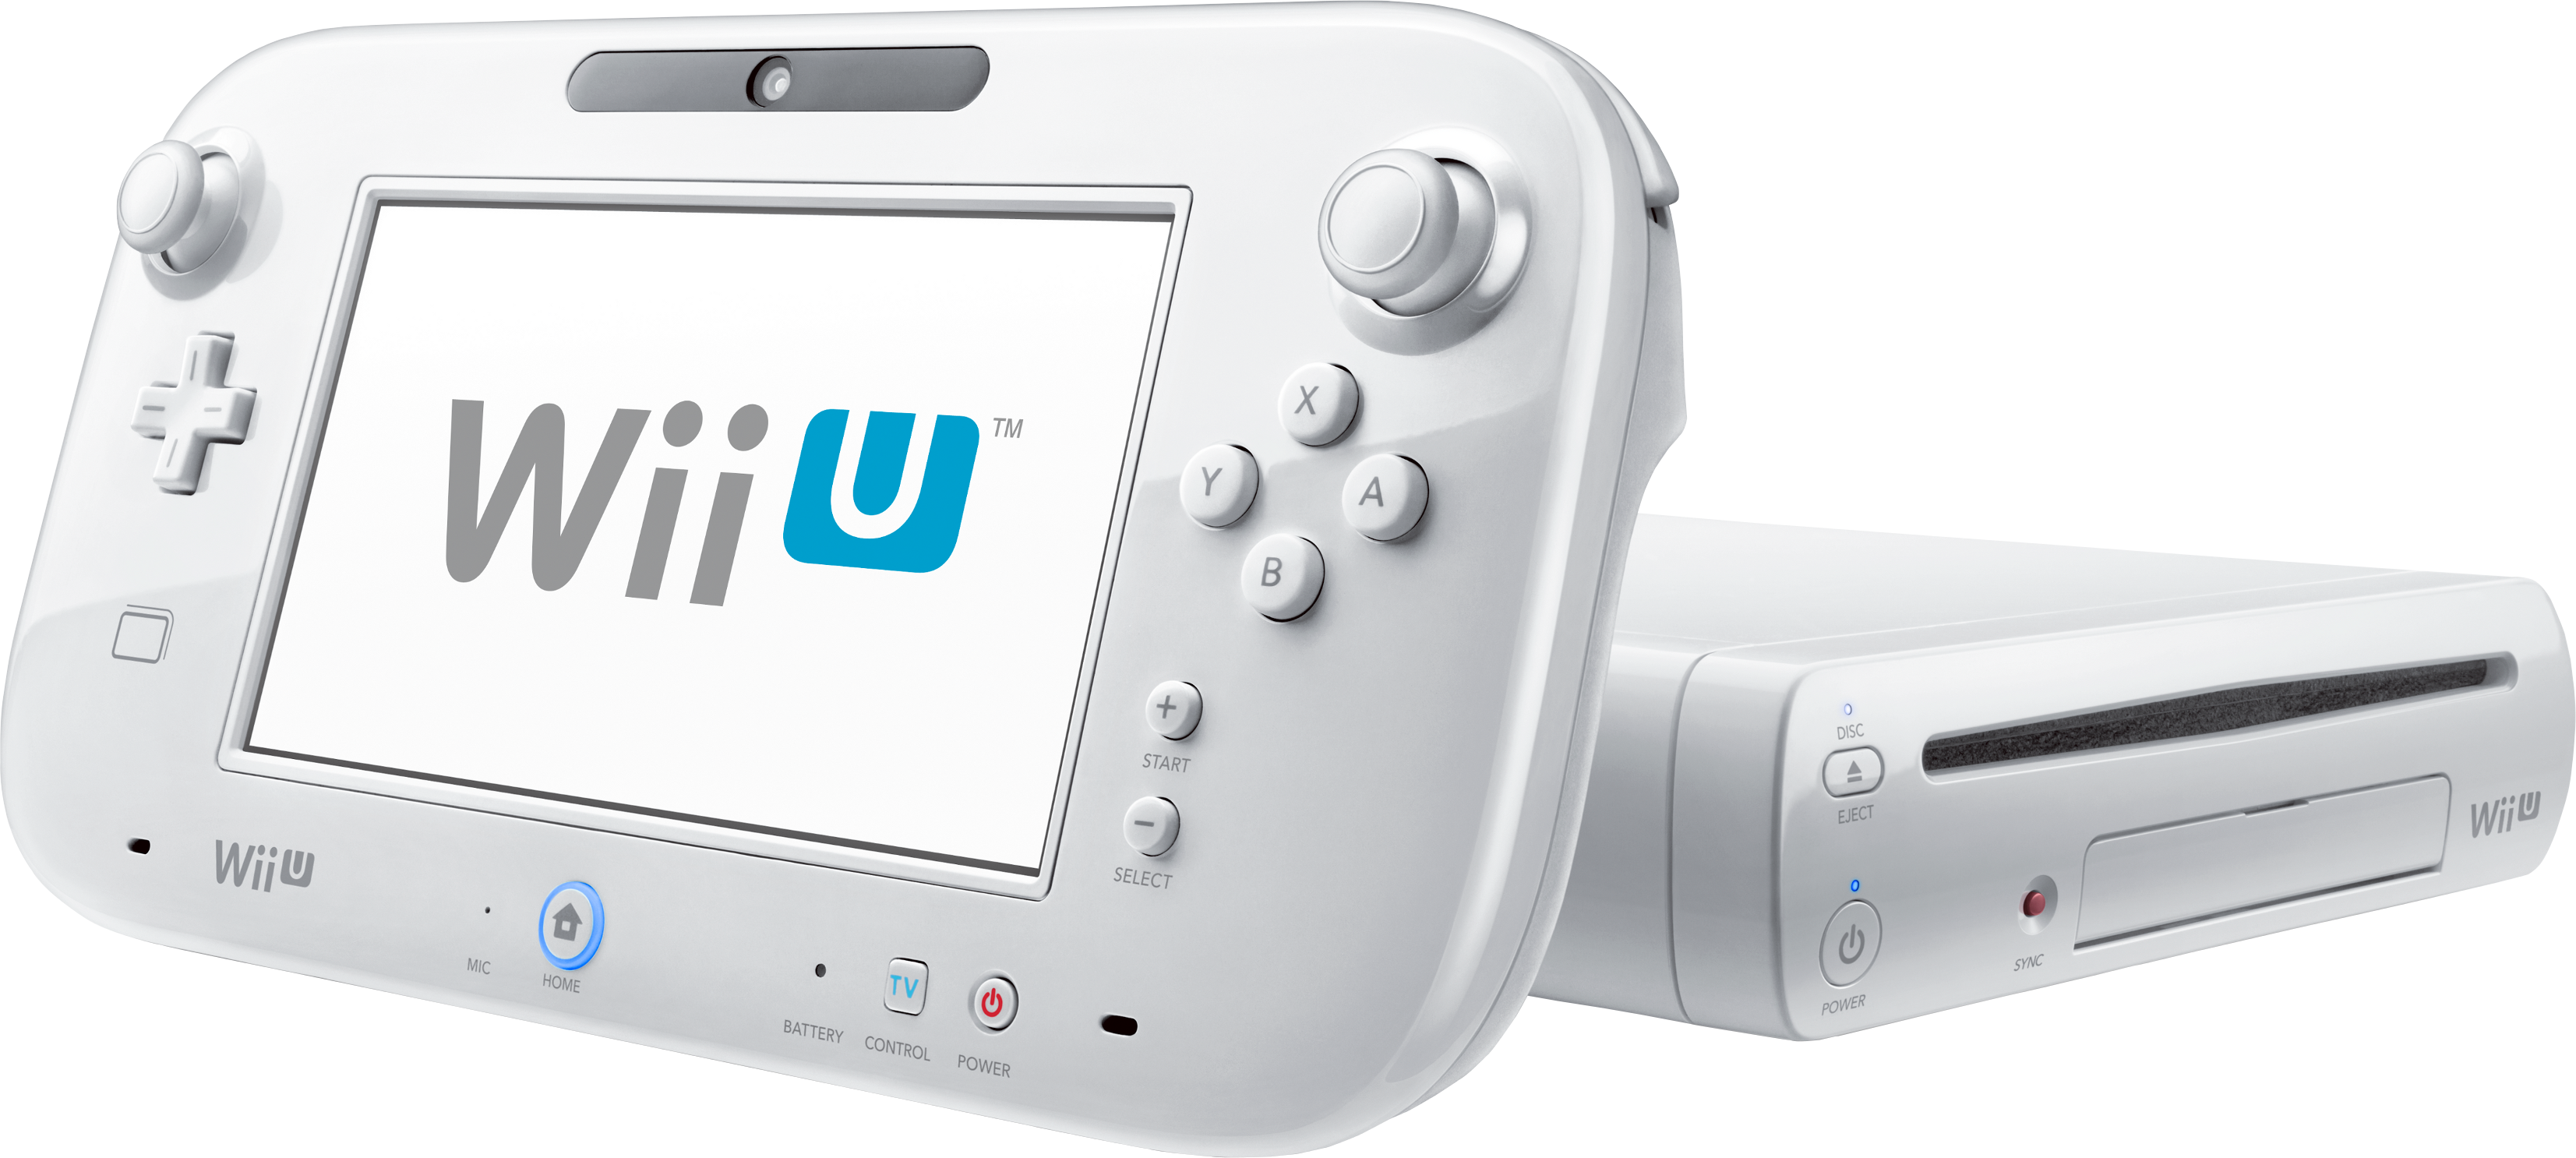 gezond verstand speel piano focus 10 grote verschillen tussen Nintendo Wii U en Wii: actueel schoolnieuws